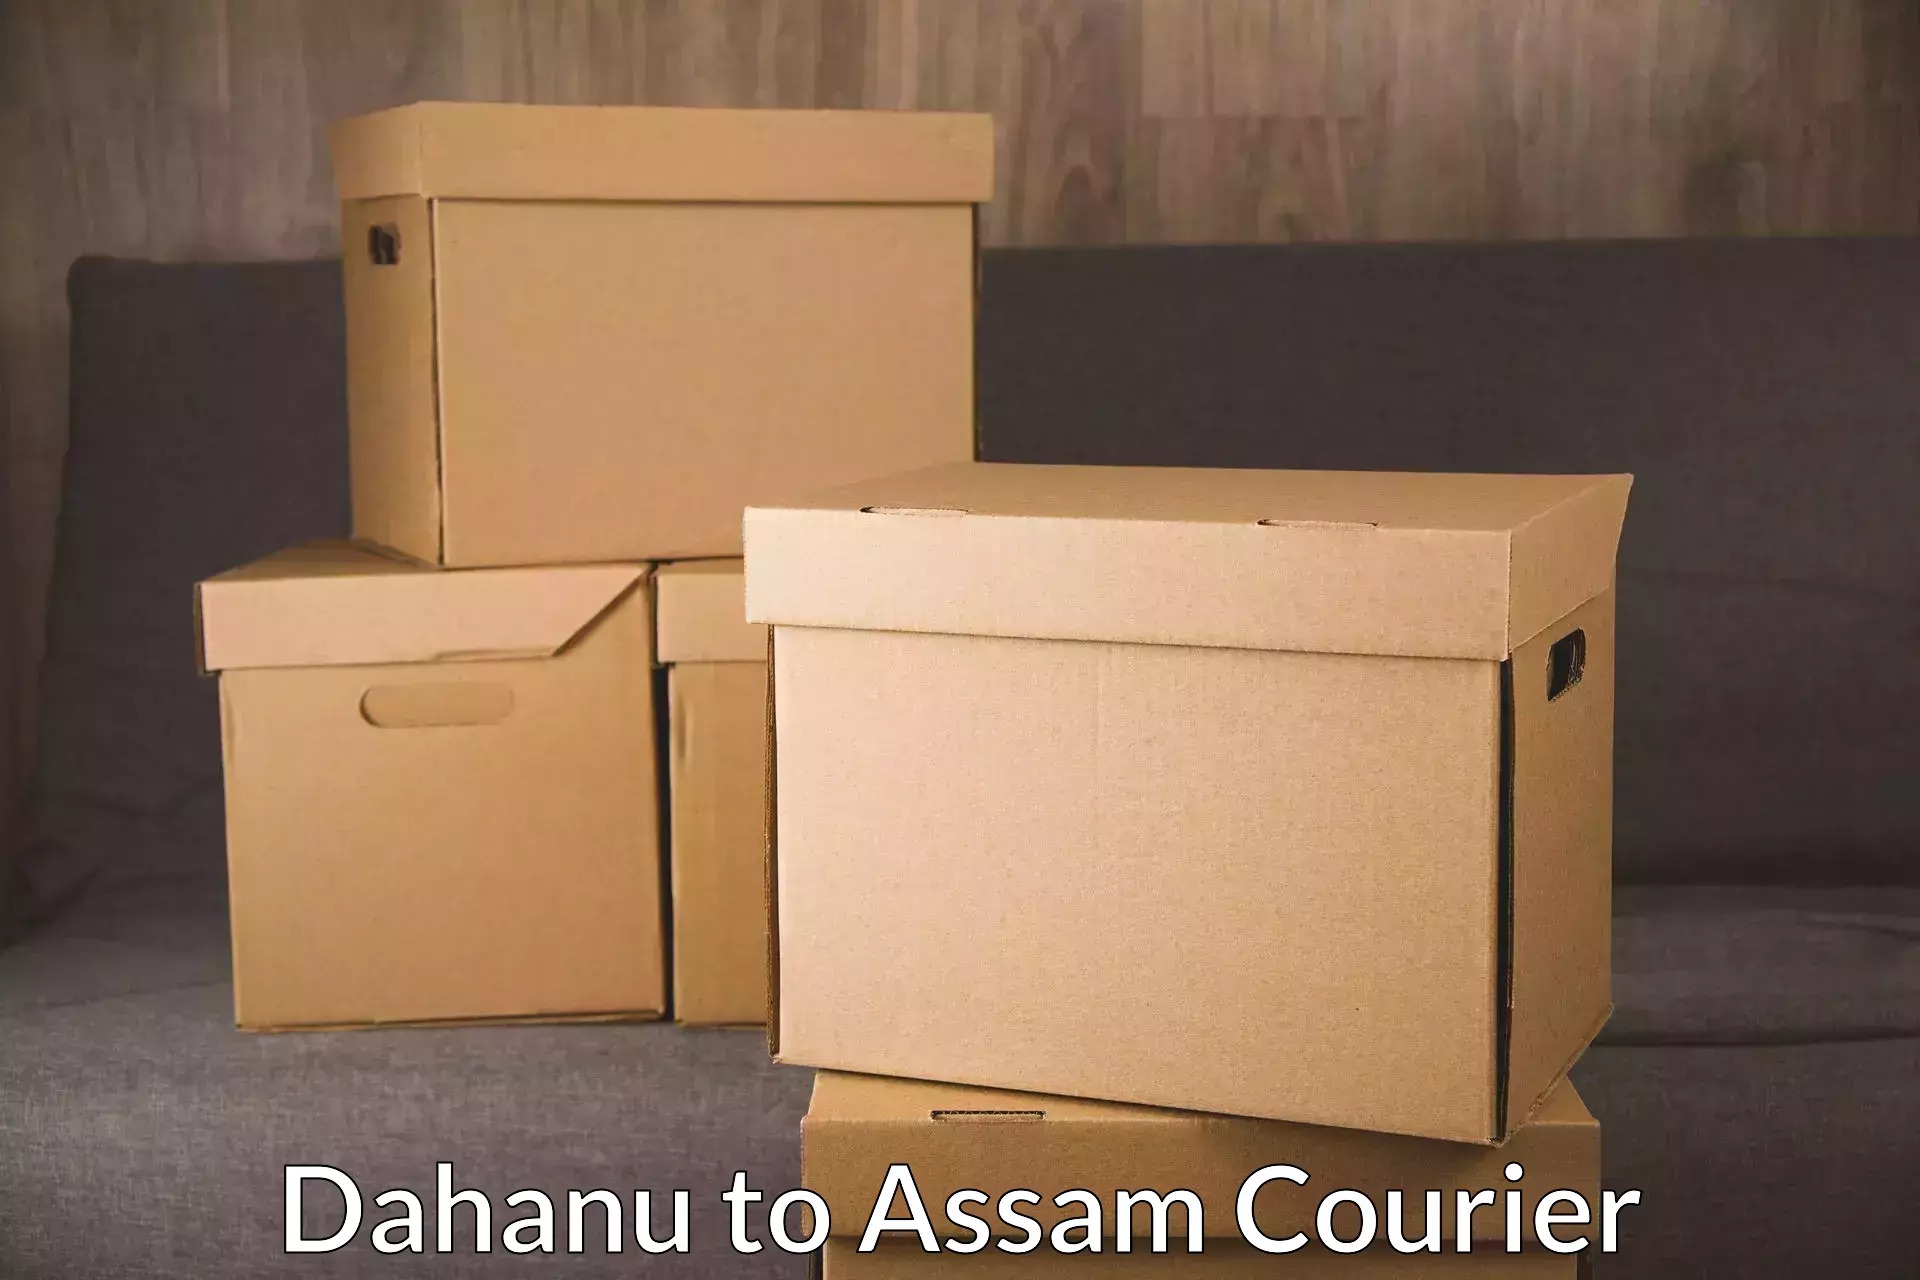 Bulk shipment Dahanu to Lala Assam